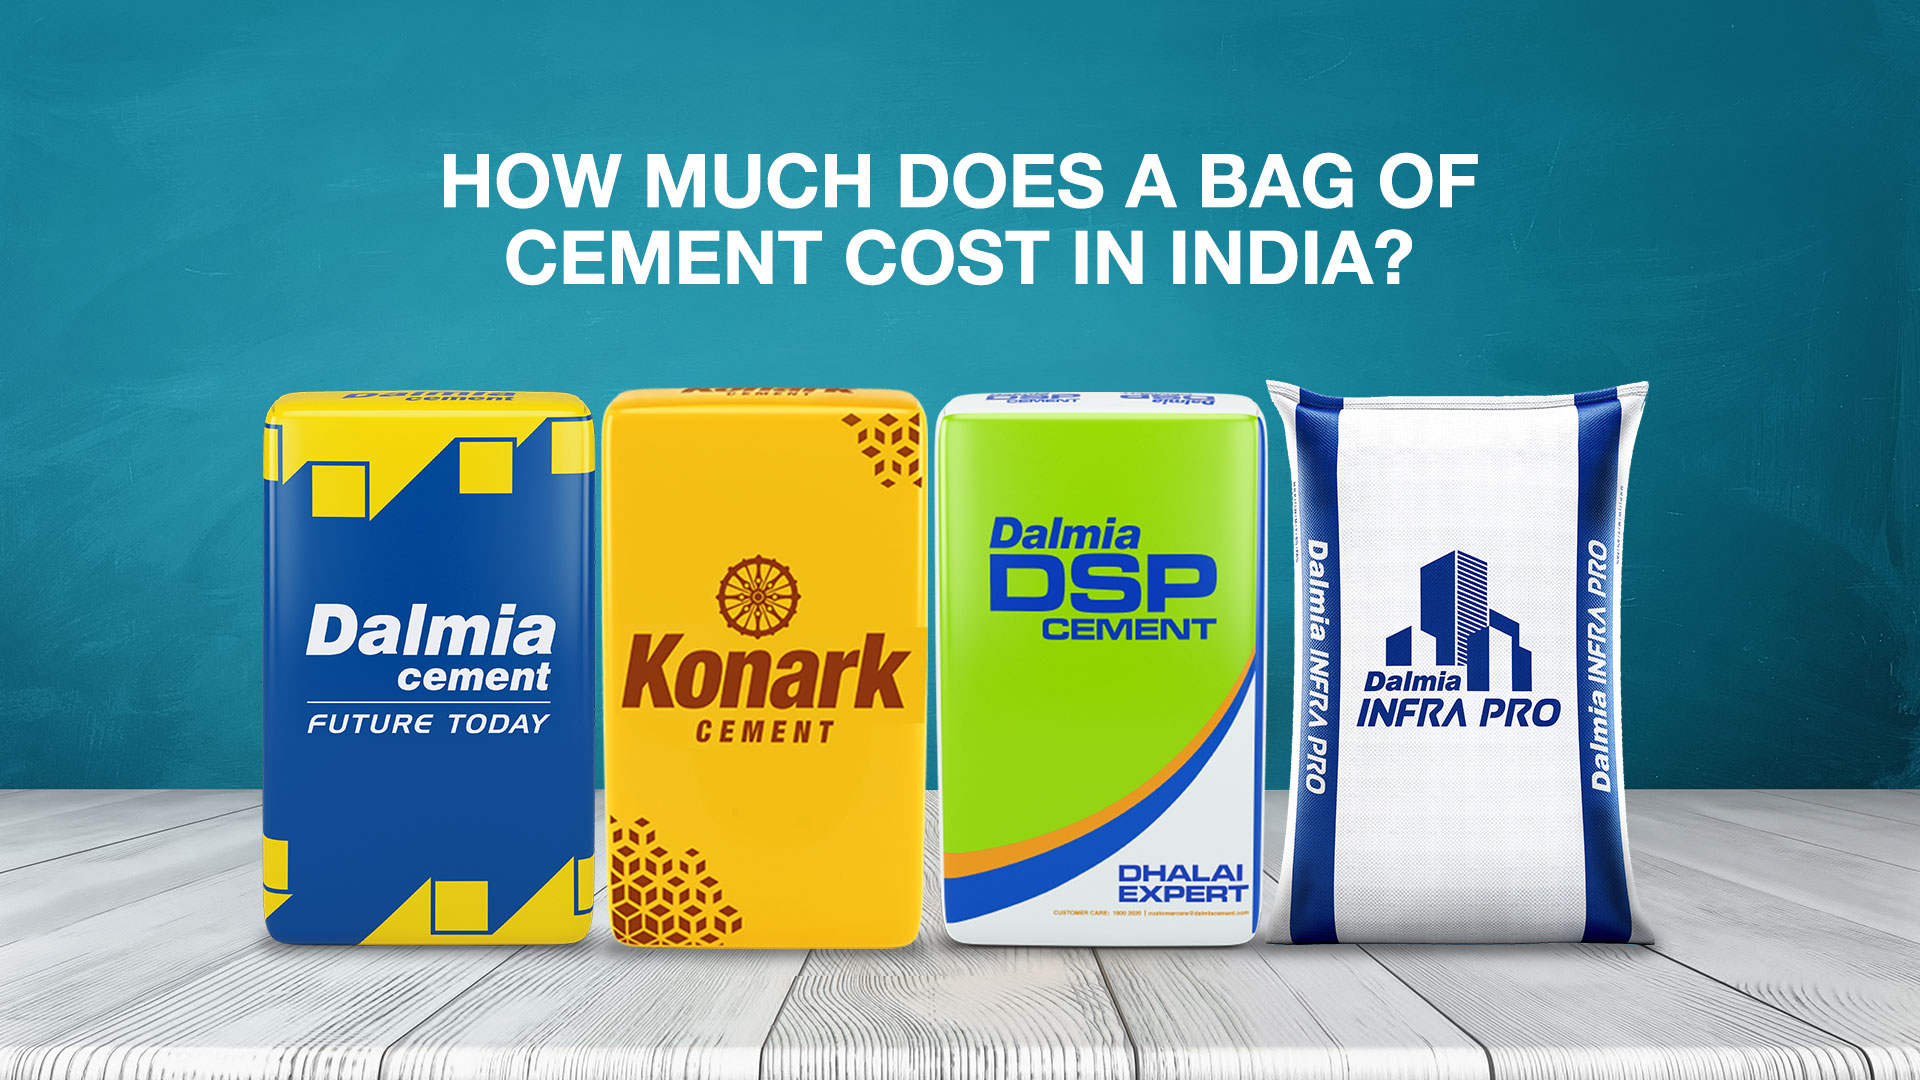 News Par Views : Mahendra Singhi, MD & CEO, Dalmia Cement Bharat in Talk  With Anil Singhvi | #NewsParViews 🏚️🪦 आगे सीमेंट के दाम बढ़ाएंगे, इंफा  सेक्टर में डिमांड बढ़ी : महेंद्र